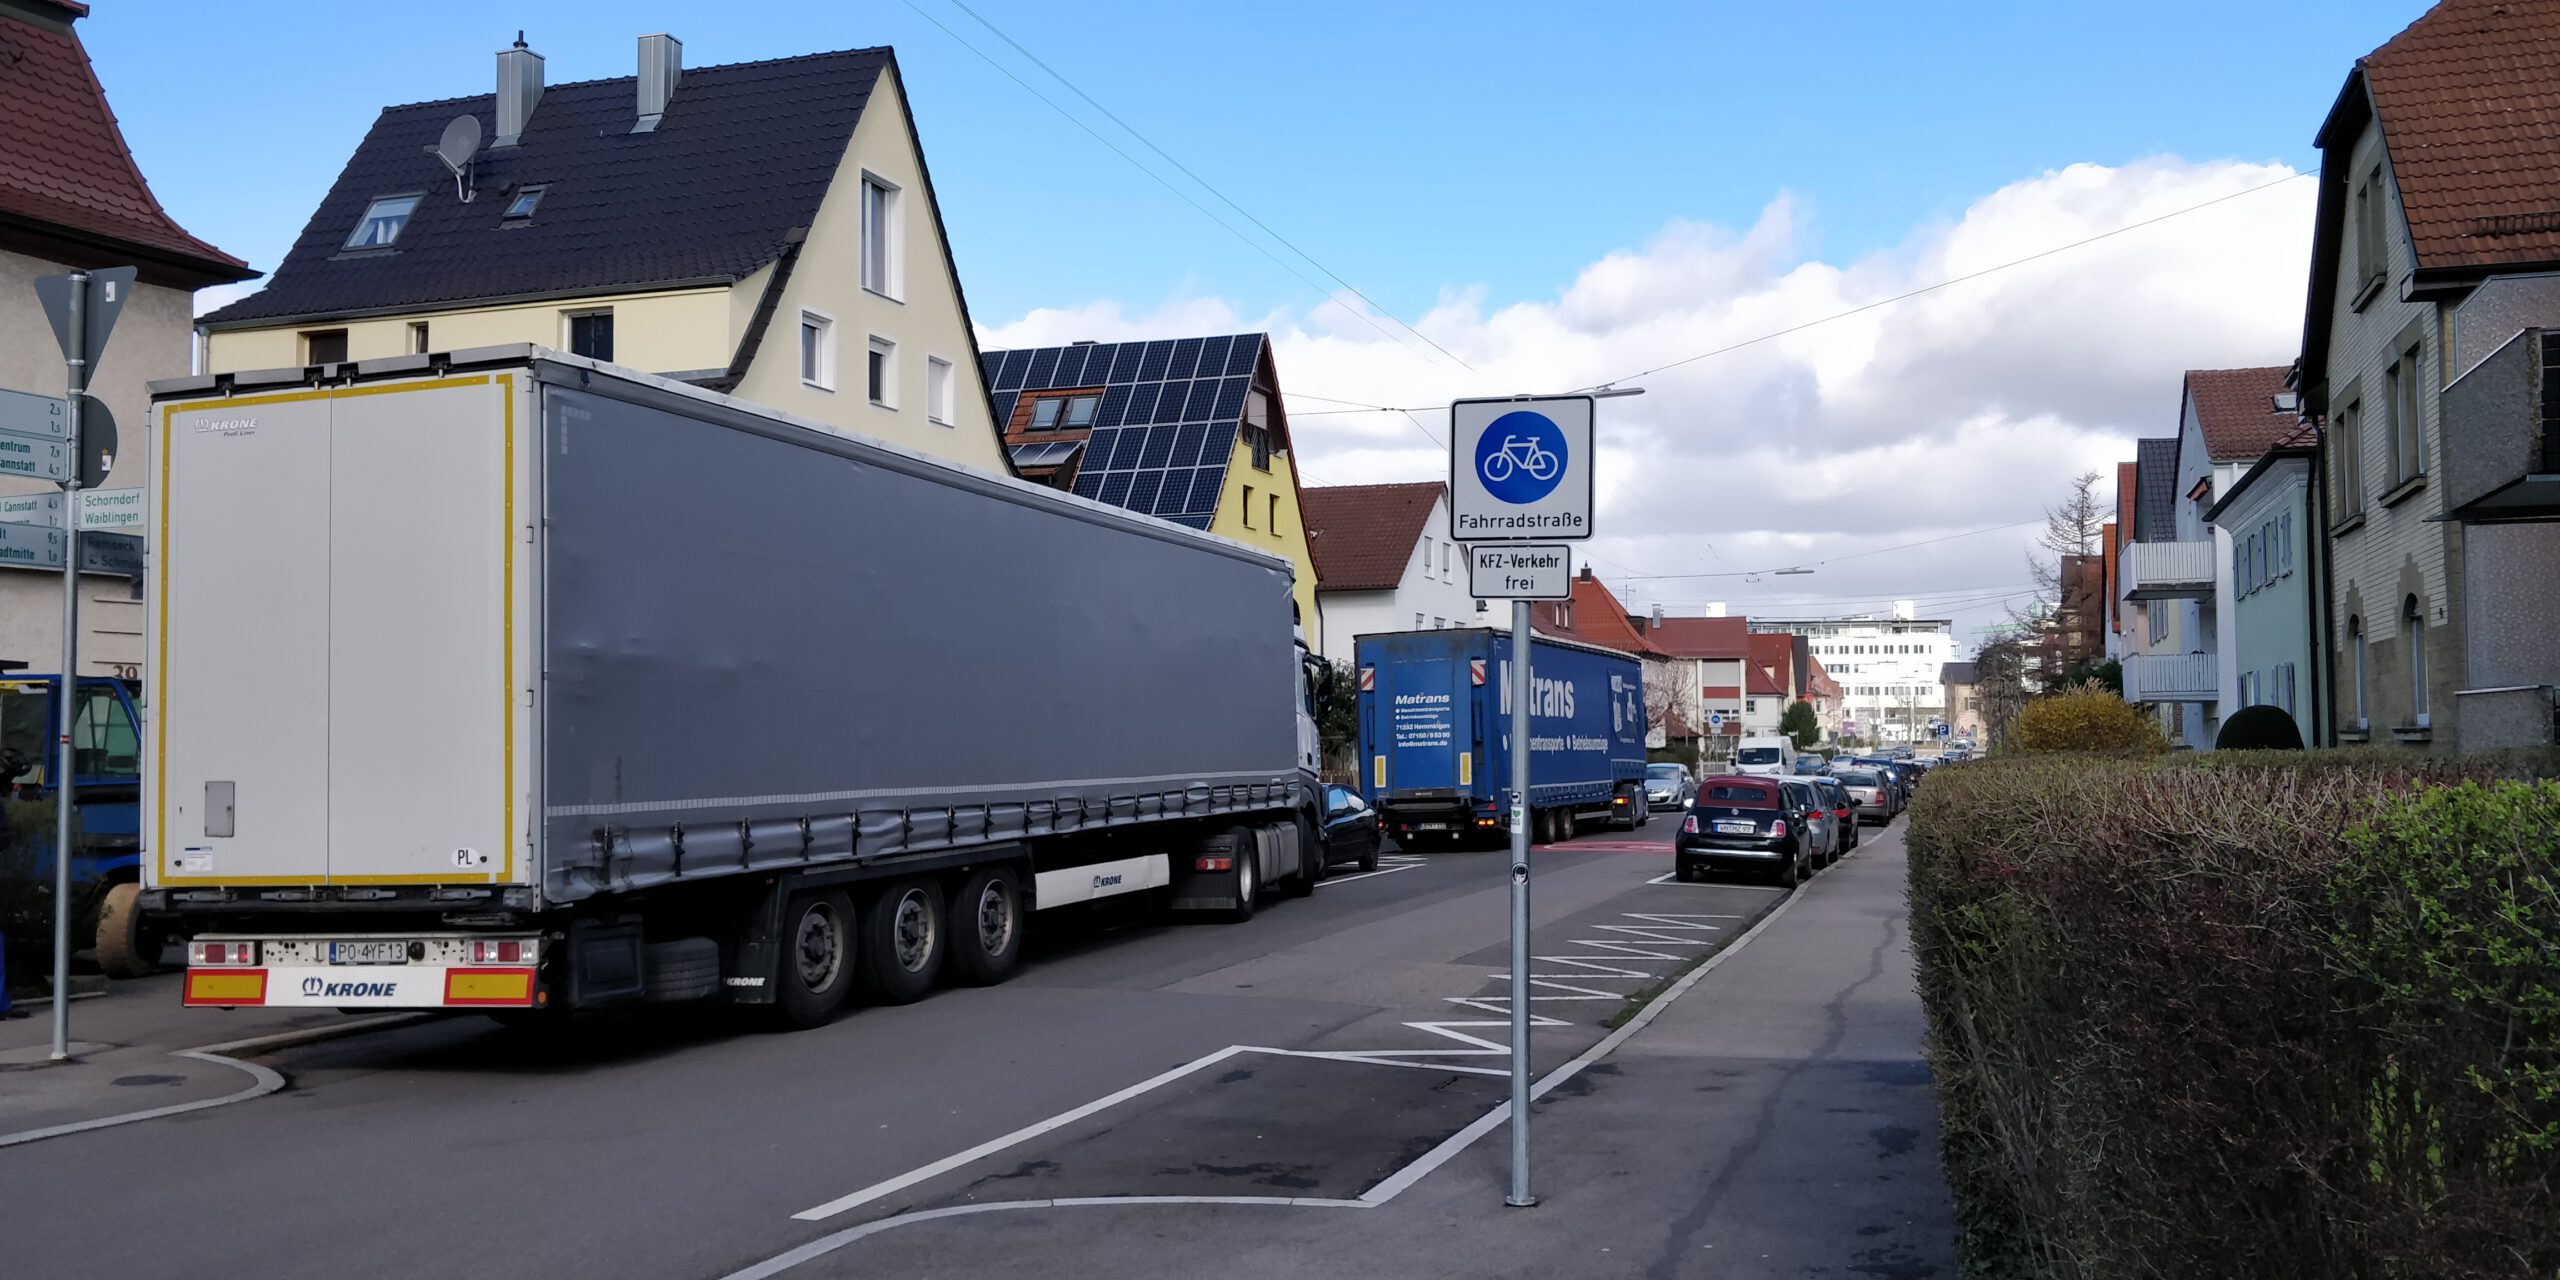 Theodor-Heuss-Straße: eine Fahrradstraße mit zugelassenem Kfz-Verkehr. Die große Zahl an Kfz, insbesondere der Lkw, ist der Sicherheit des Radverkehrs nicht zuträglich. Fahrradstraßen müssen vom motorisierten Durchgangsverkehr freigehalten werden.